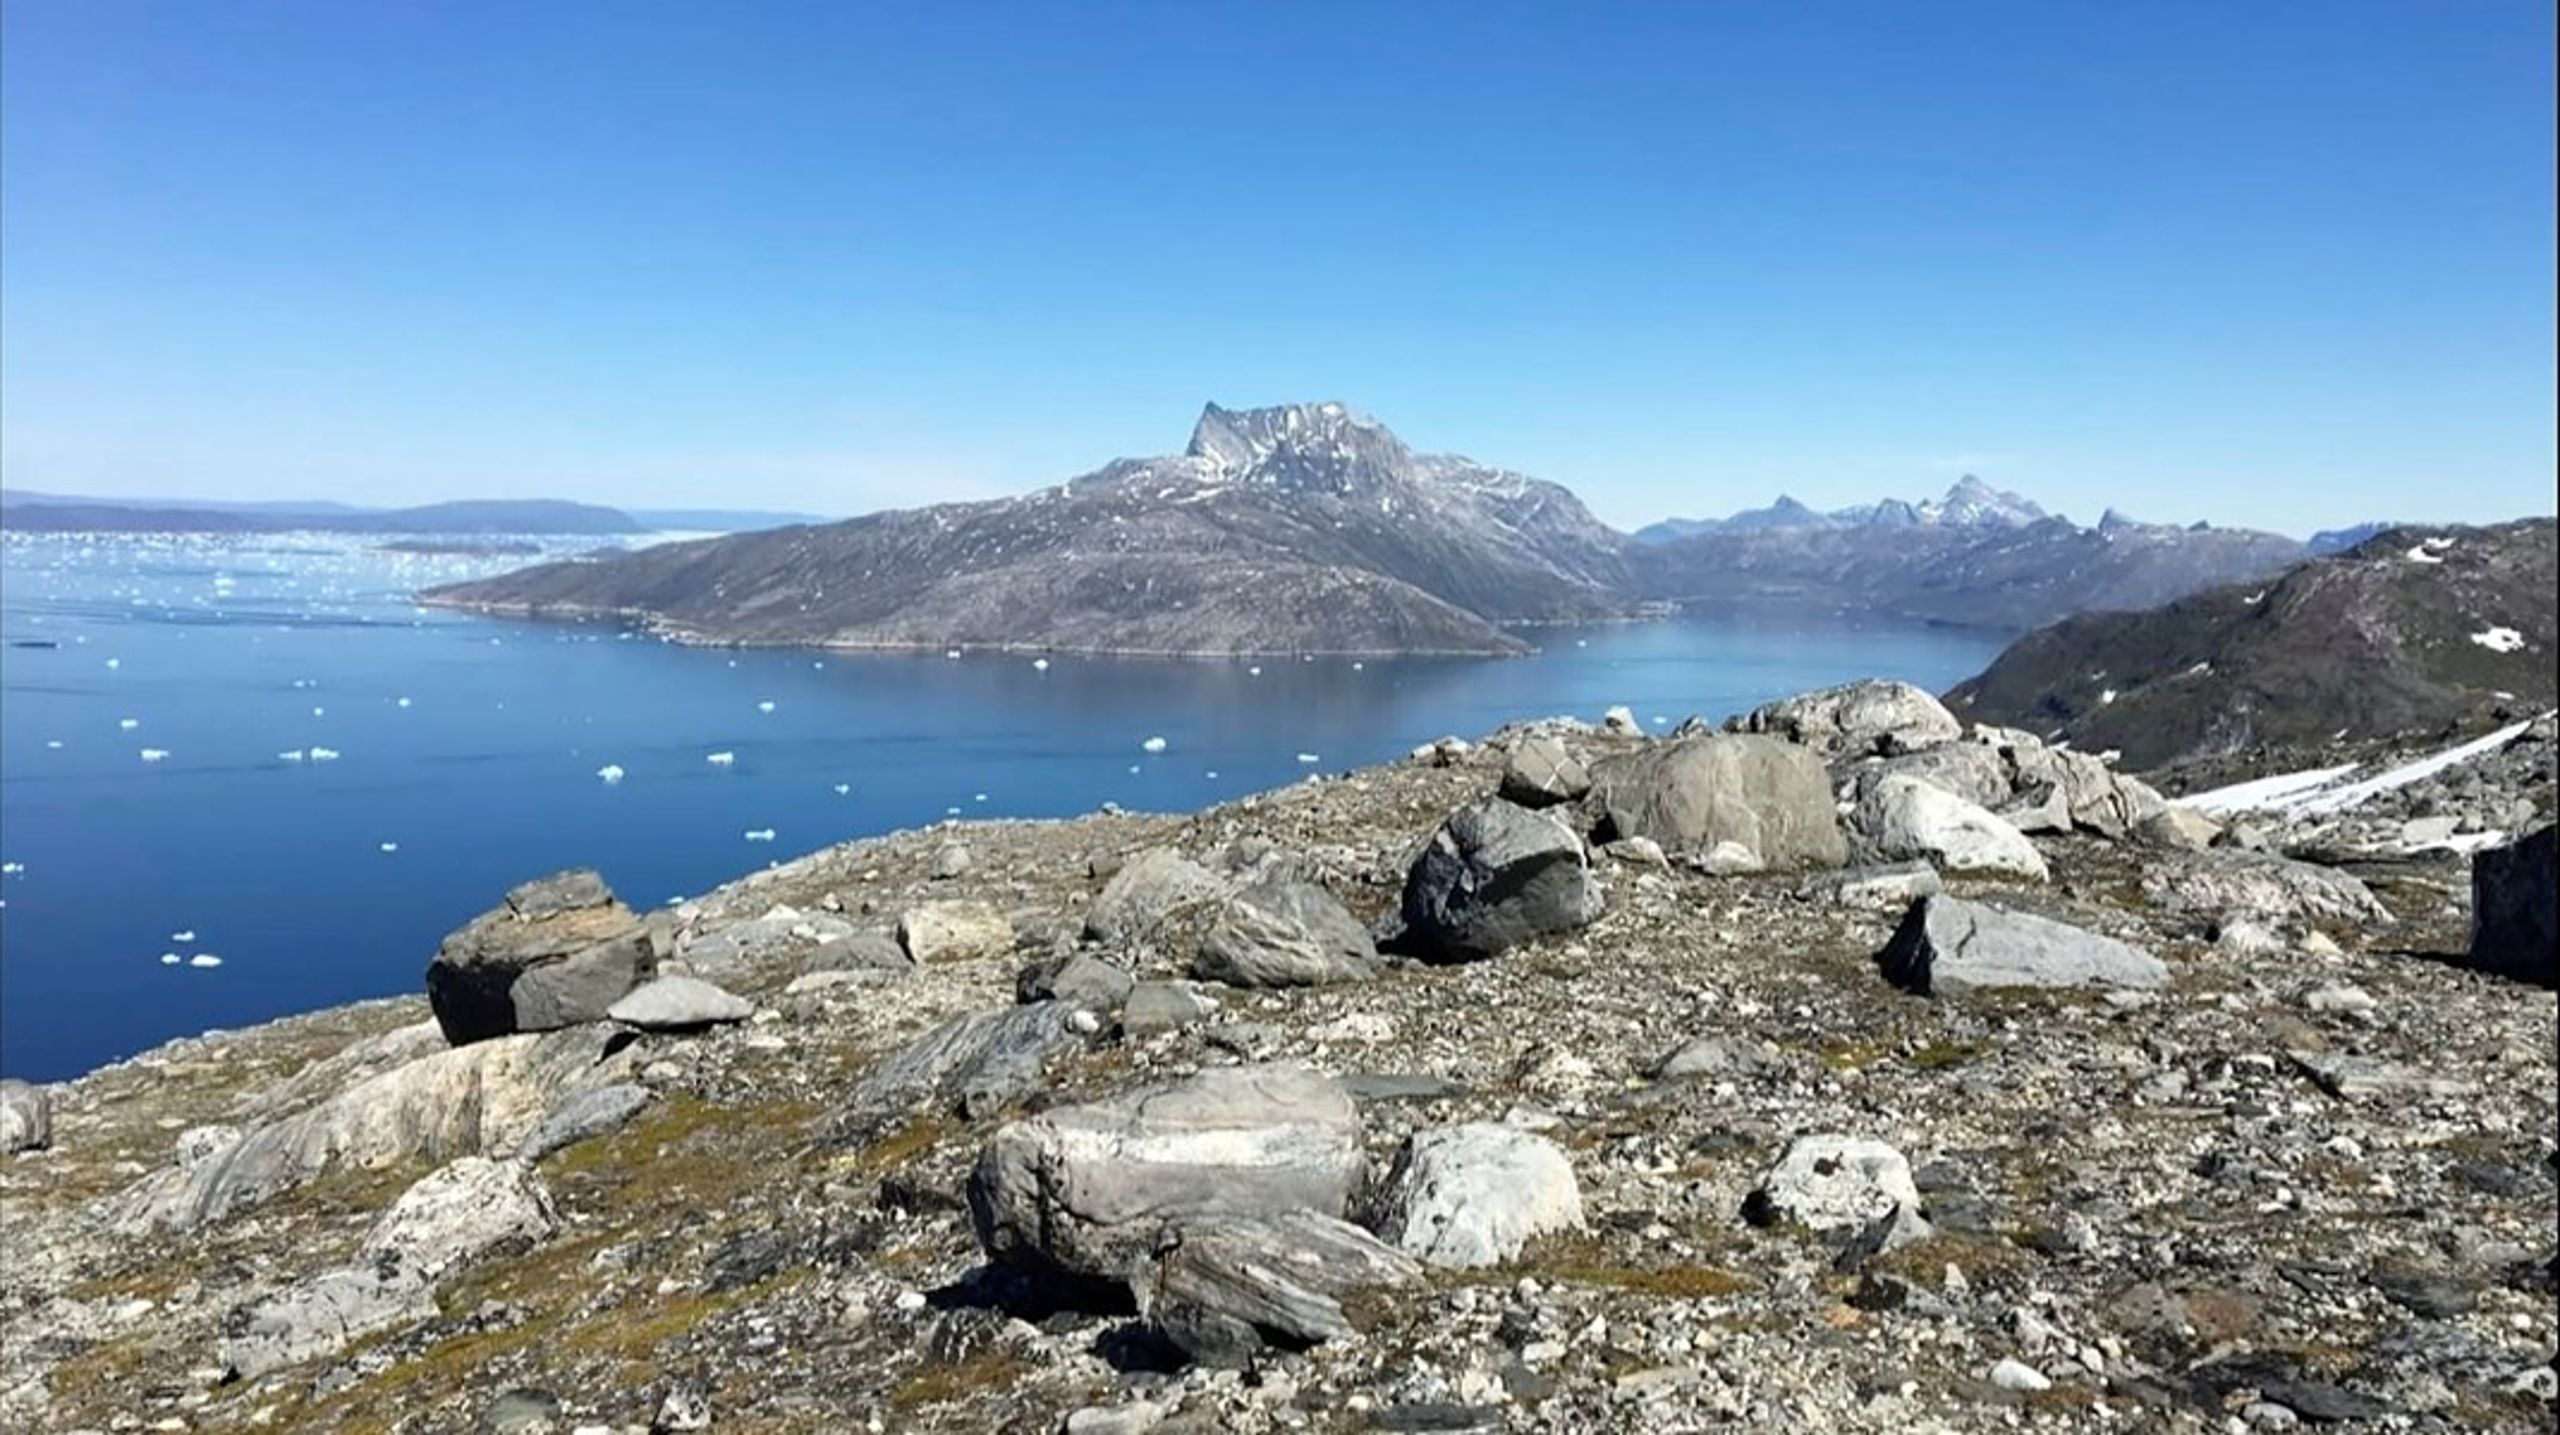 Måske kan EU-chefen drømme om en udsigt som denne over Nuuk Fjord, når hun fredag besøger Grønland.